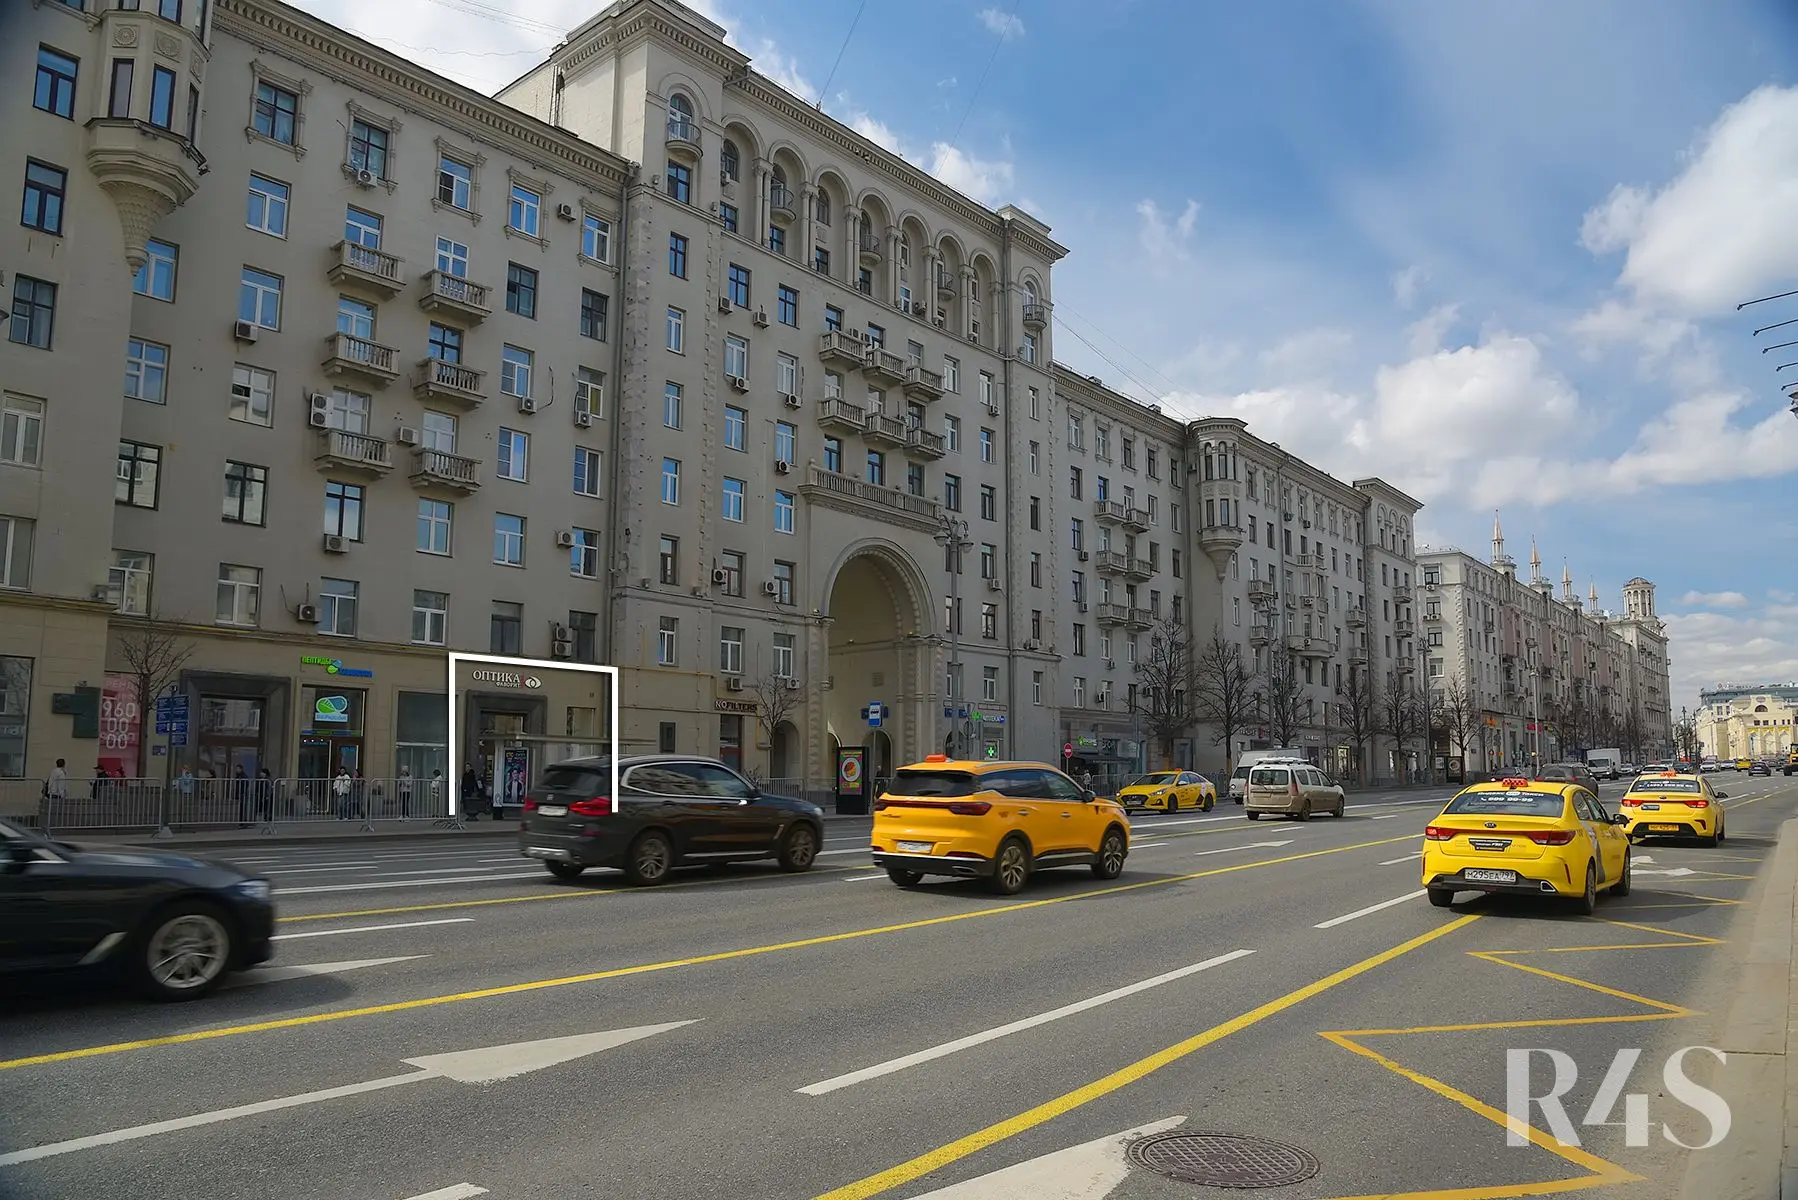 Продажа готового арендного бизнеса площадью 149.6 м2 в Москве: Тверская, 15 R4S | Realty4Sale